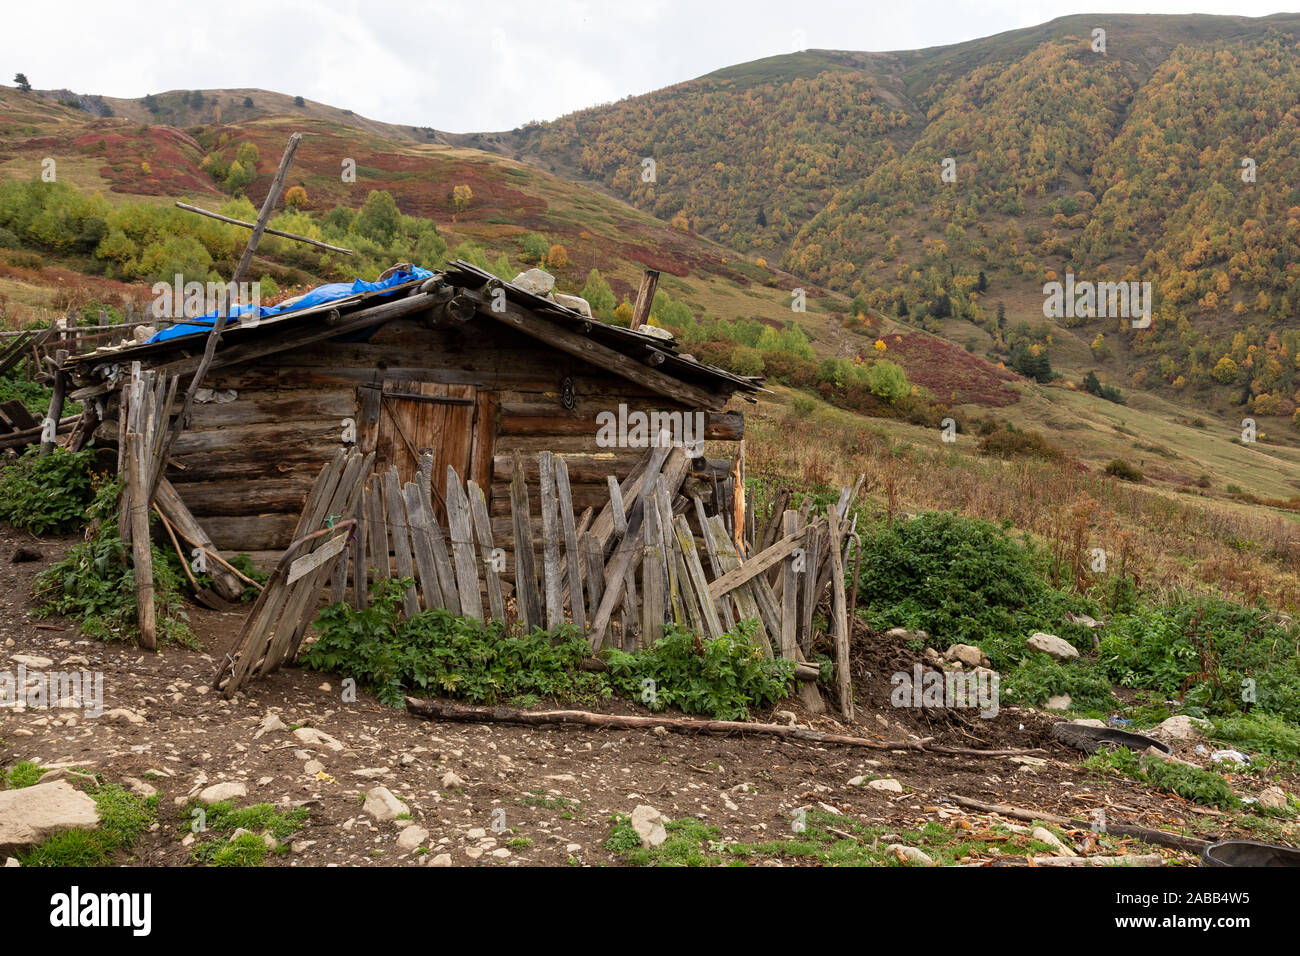 Mountainous Caucasus landscape in Svaneti region of Georgia. Stock Photo